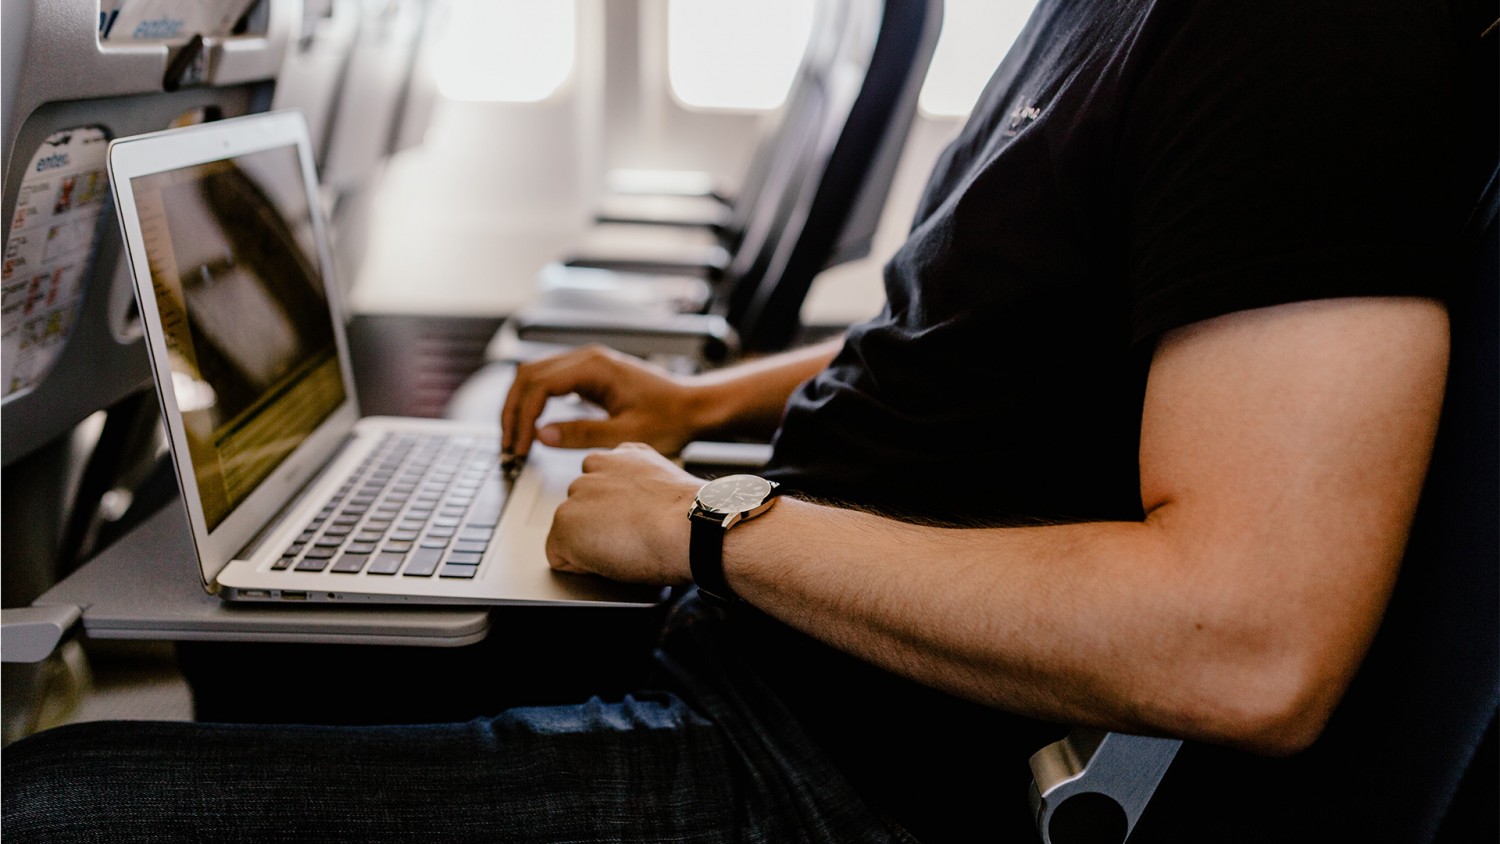 Как провозить ноутбук в самолете ред вингс